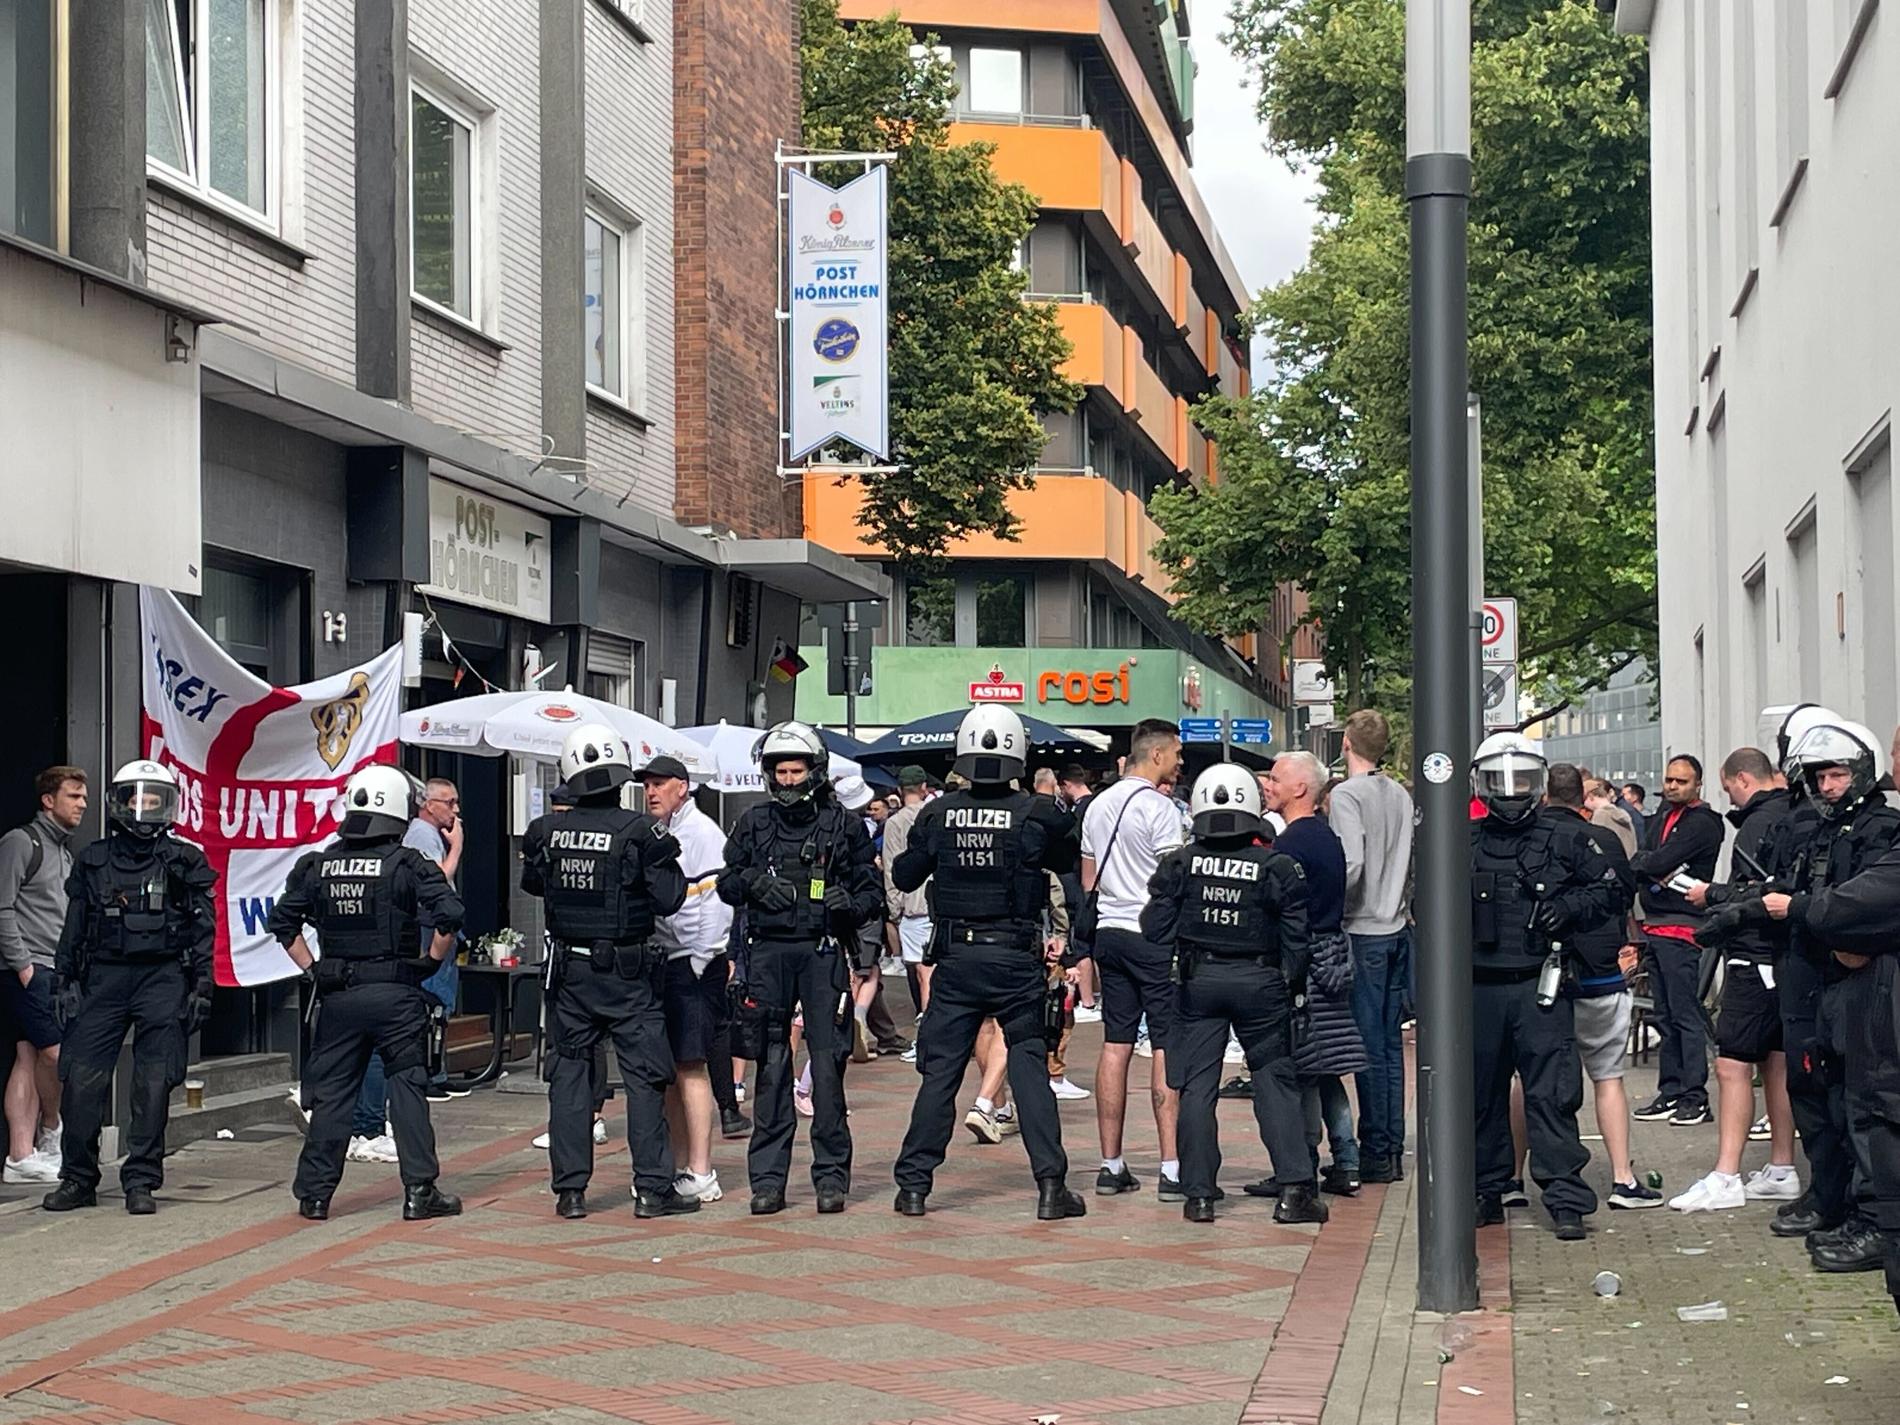 Polis håller koll på engelska fansen i Gelsenkirchen.